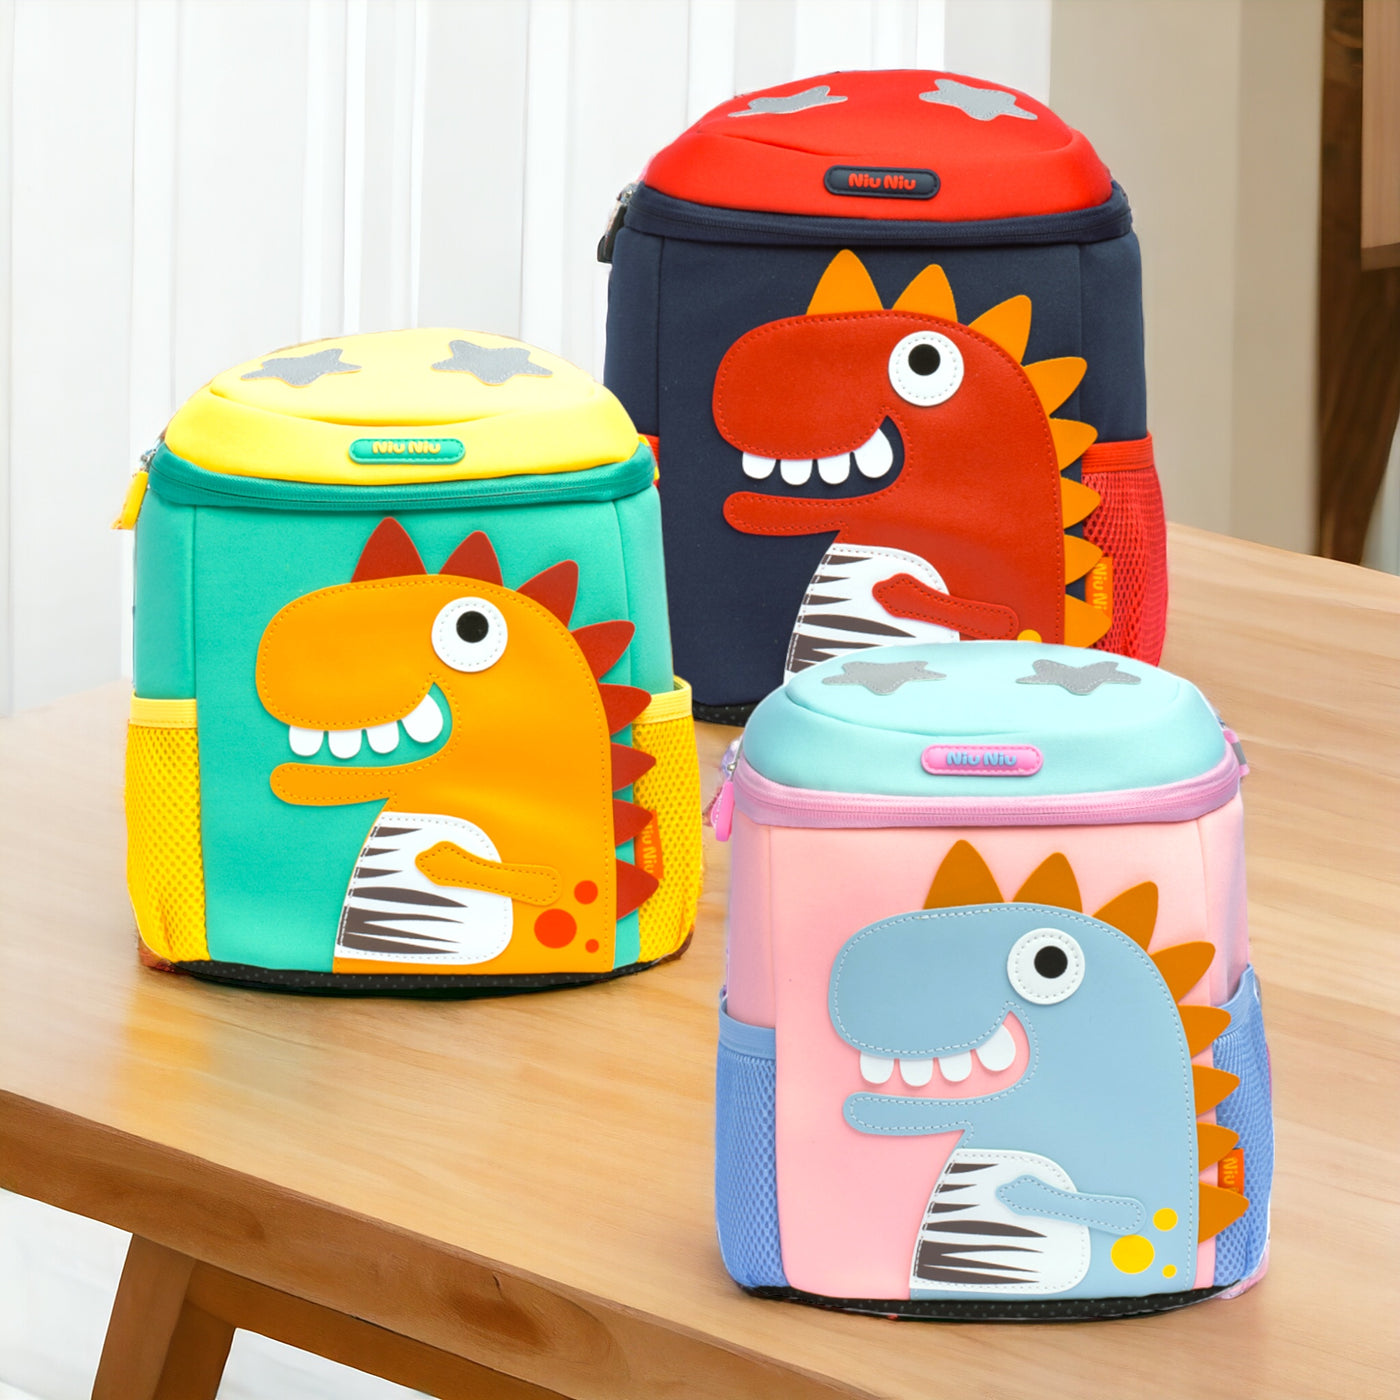 Dino 3D Kinder Pack: School Bag